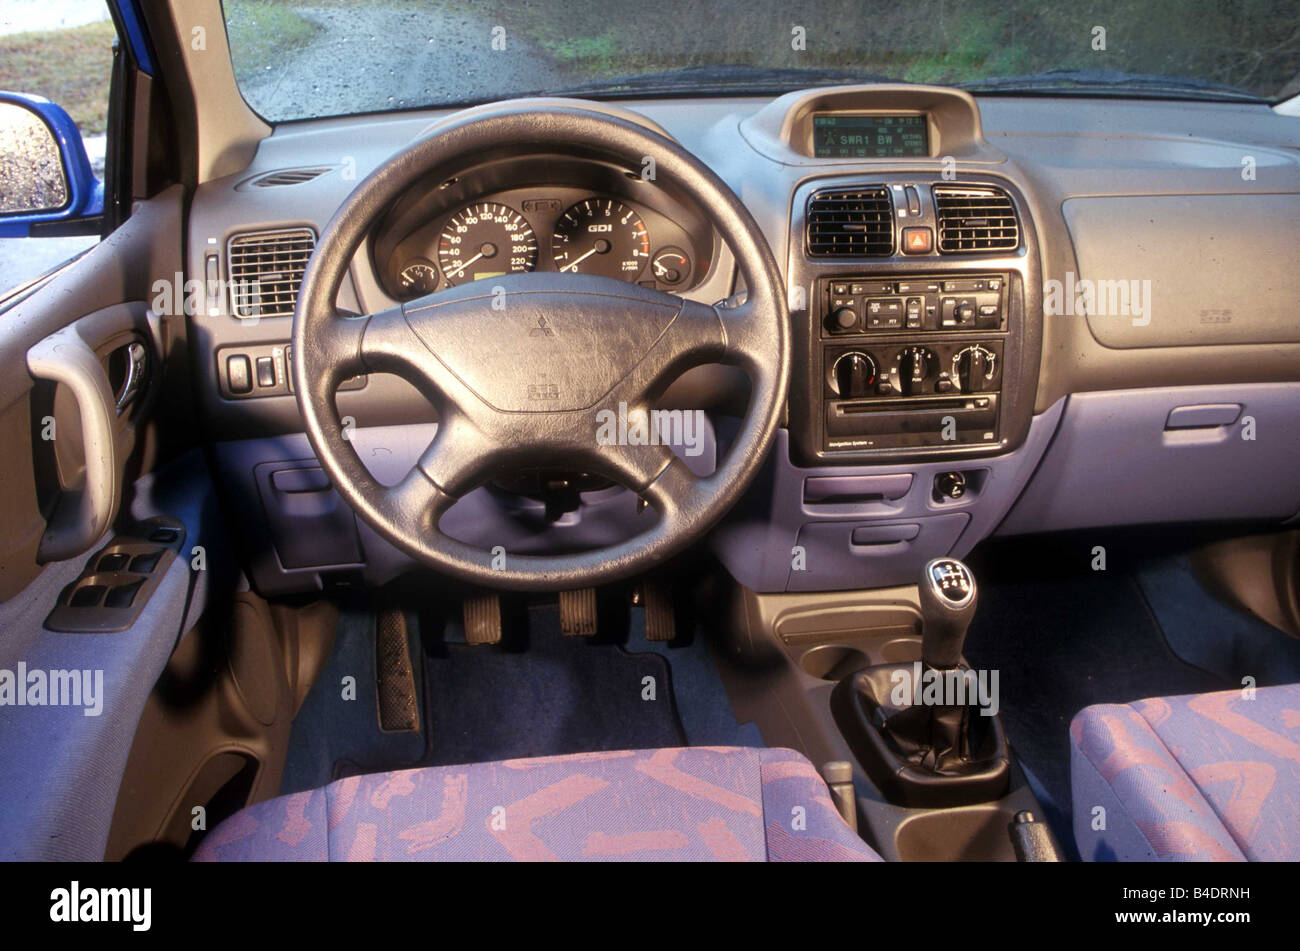 Car, Mitsubishi Space Star GDI, Van, model year 1999-2002, blue, interior view, Interior view, Cockpit, technique/accessory, acc Stock Photo